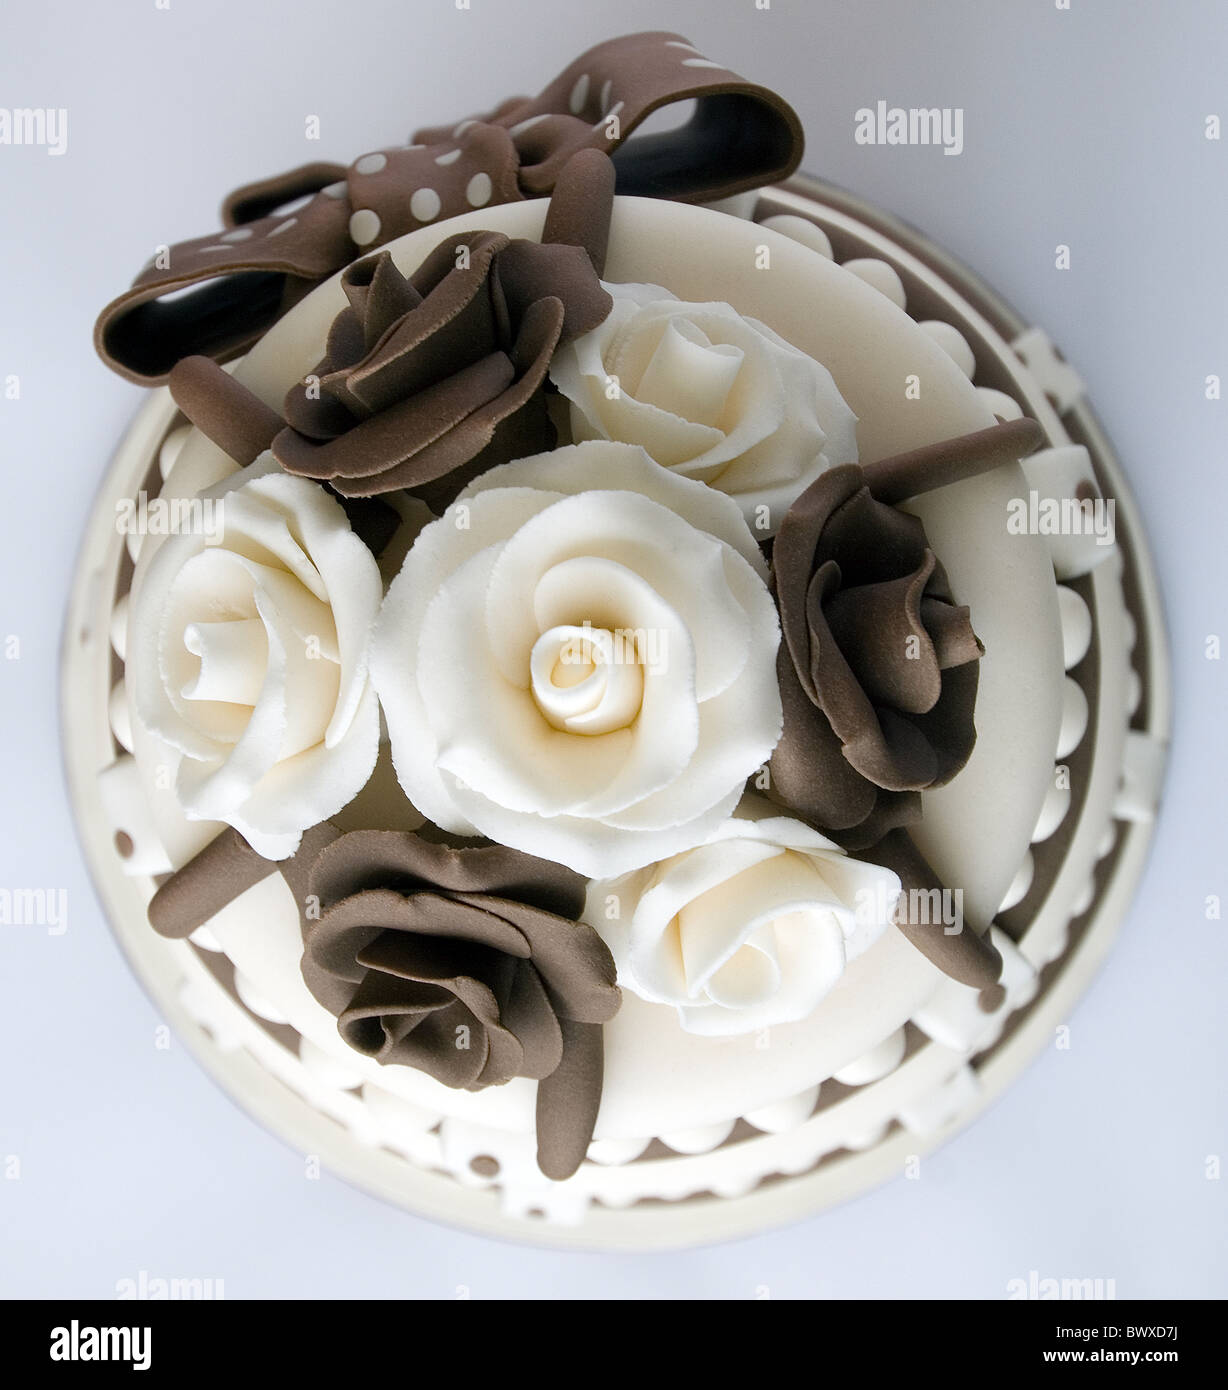 Un marrone e crema ghiacciata di celebrazione torta con le rose e archi Foto Stock